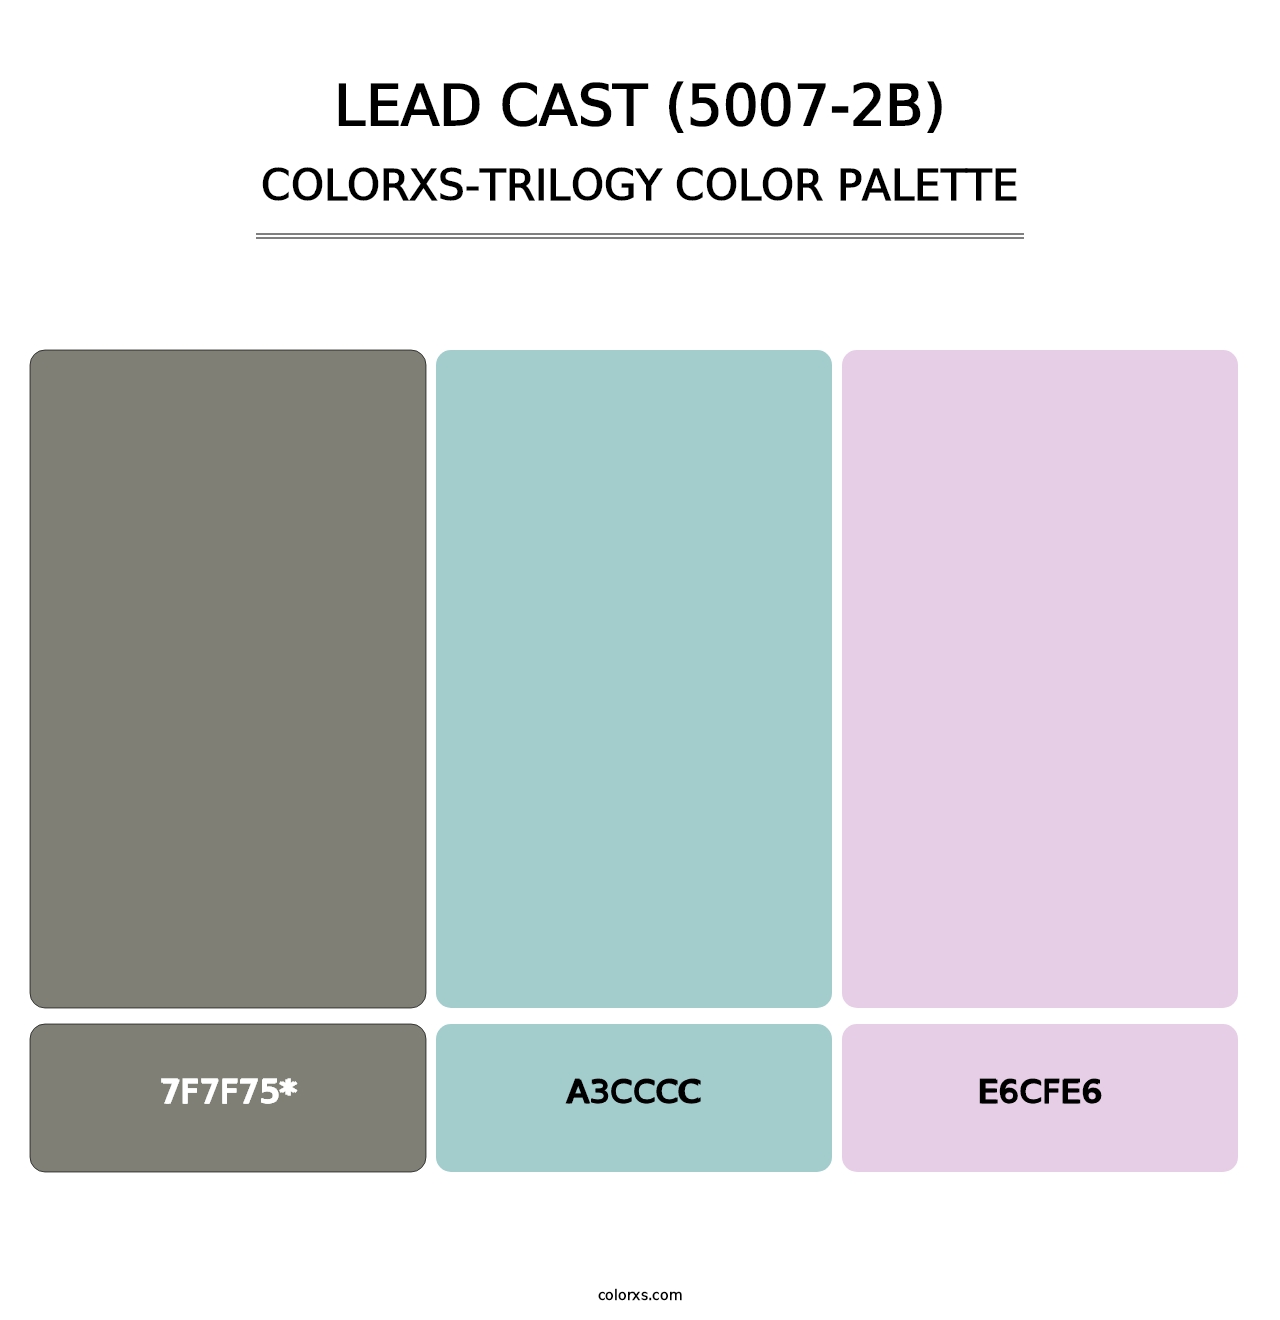 Lead Cast (5007-2B) - Colorxs Trilogy Palette